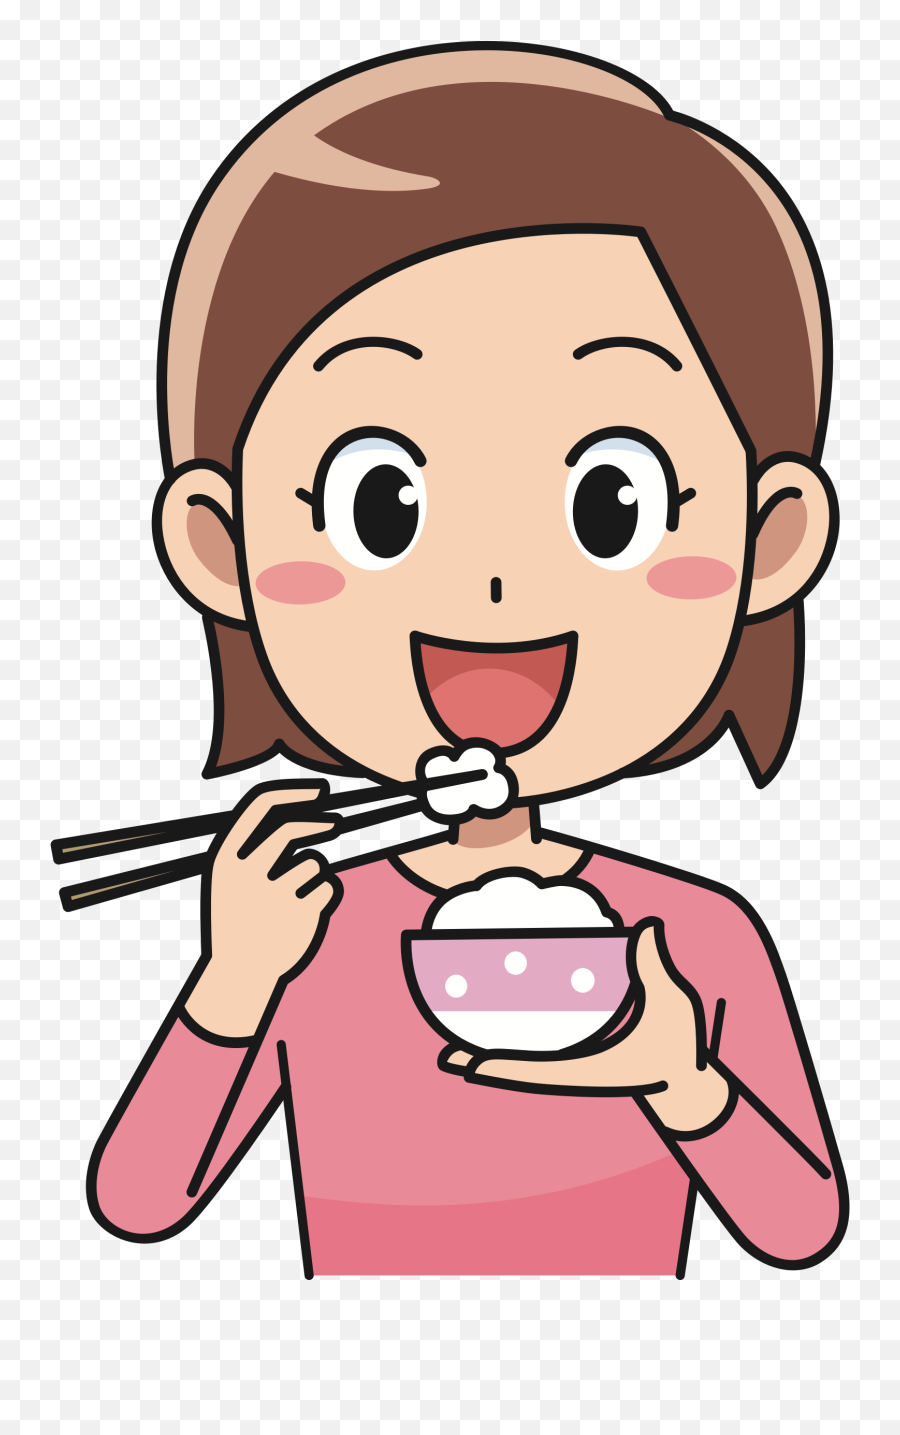 Karina - Baamboozle Eat With Chopsticks Cartoon Emoji,Verbs Clipart